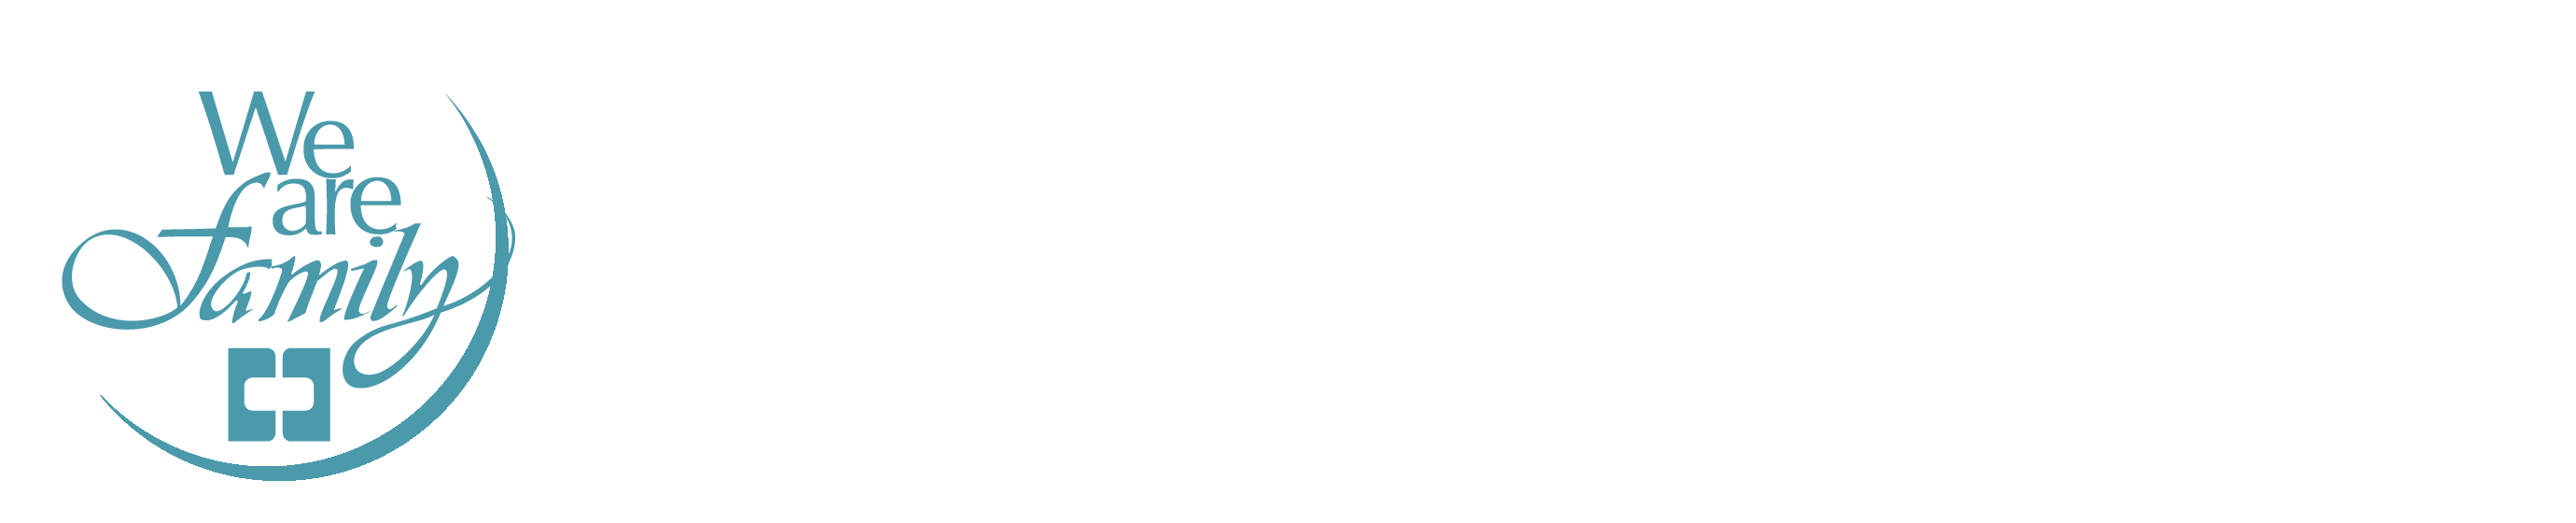 ctbc-bank-logo-01.png